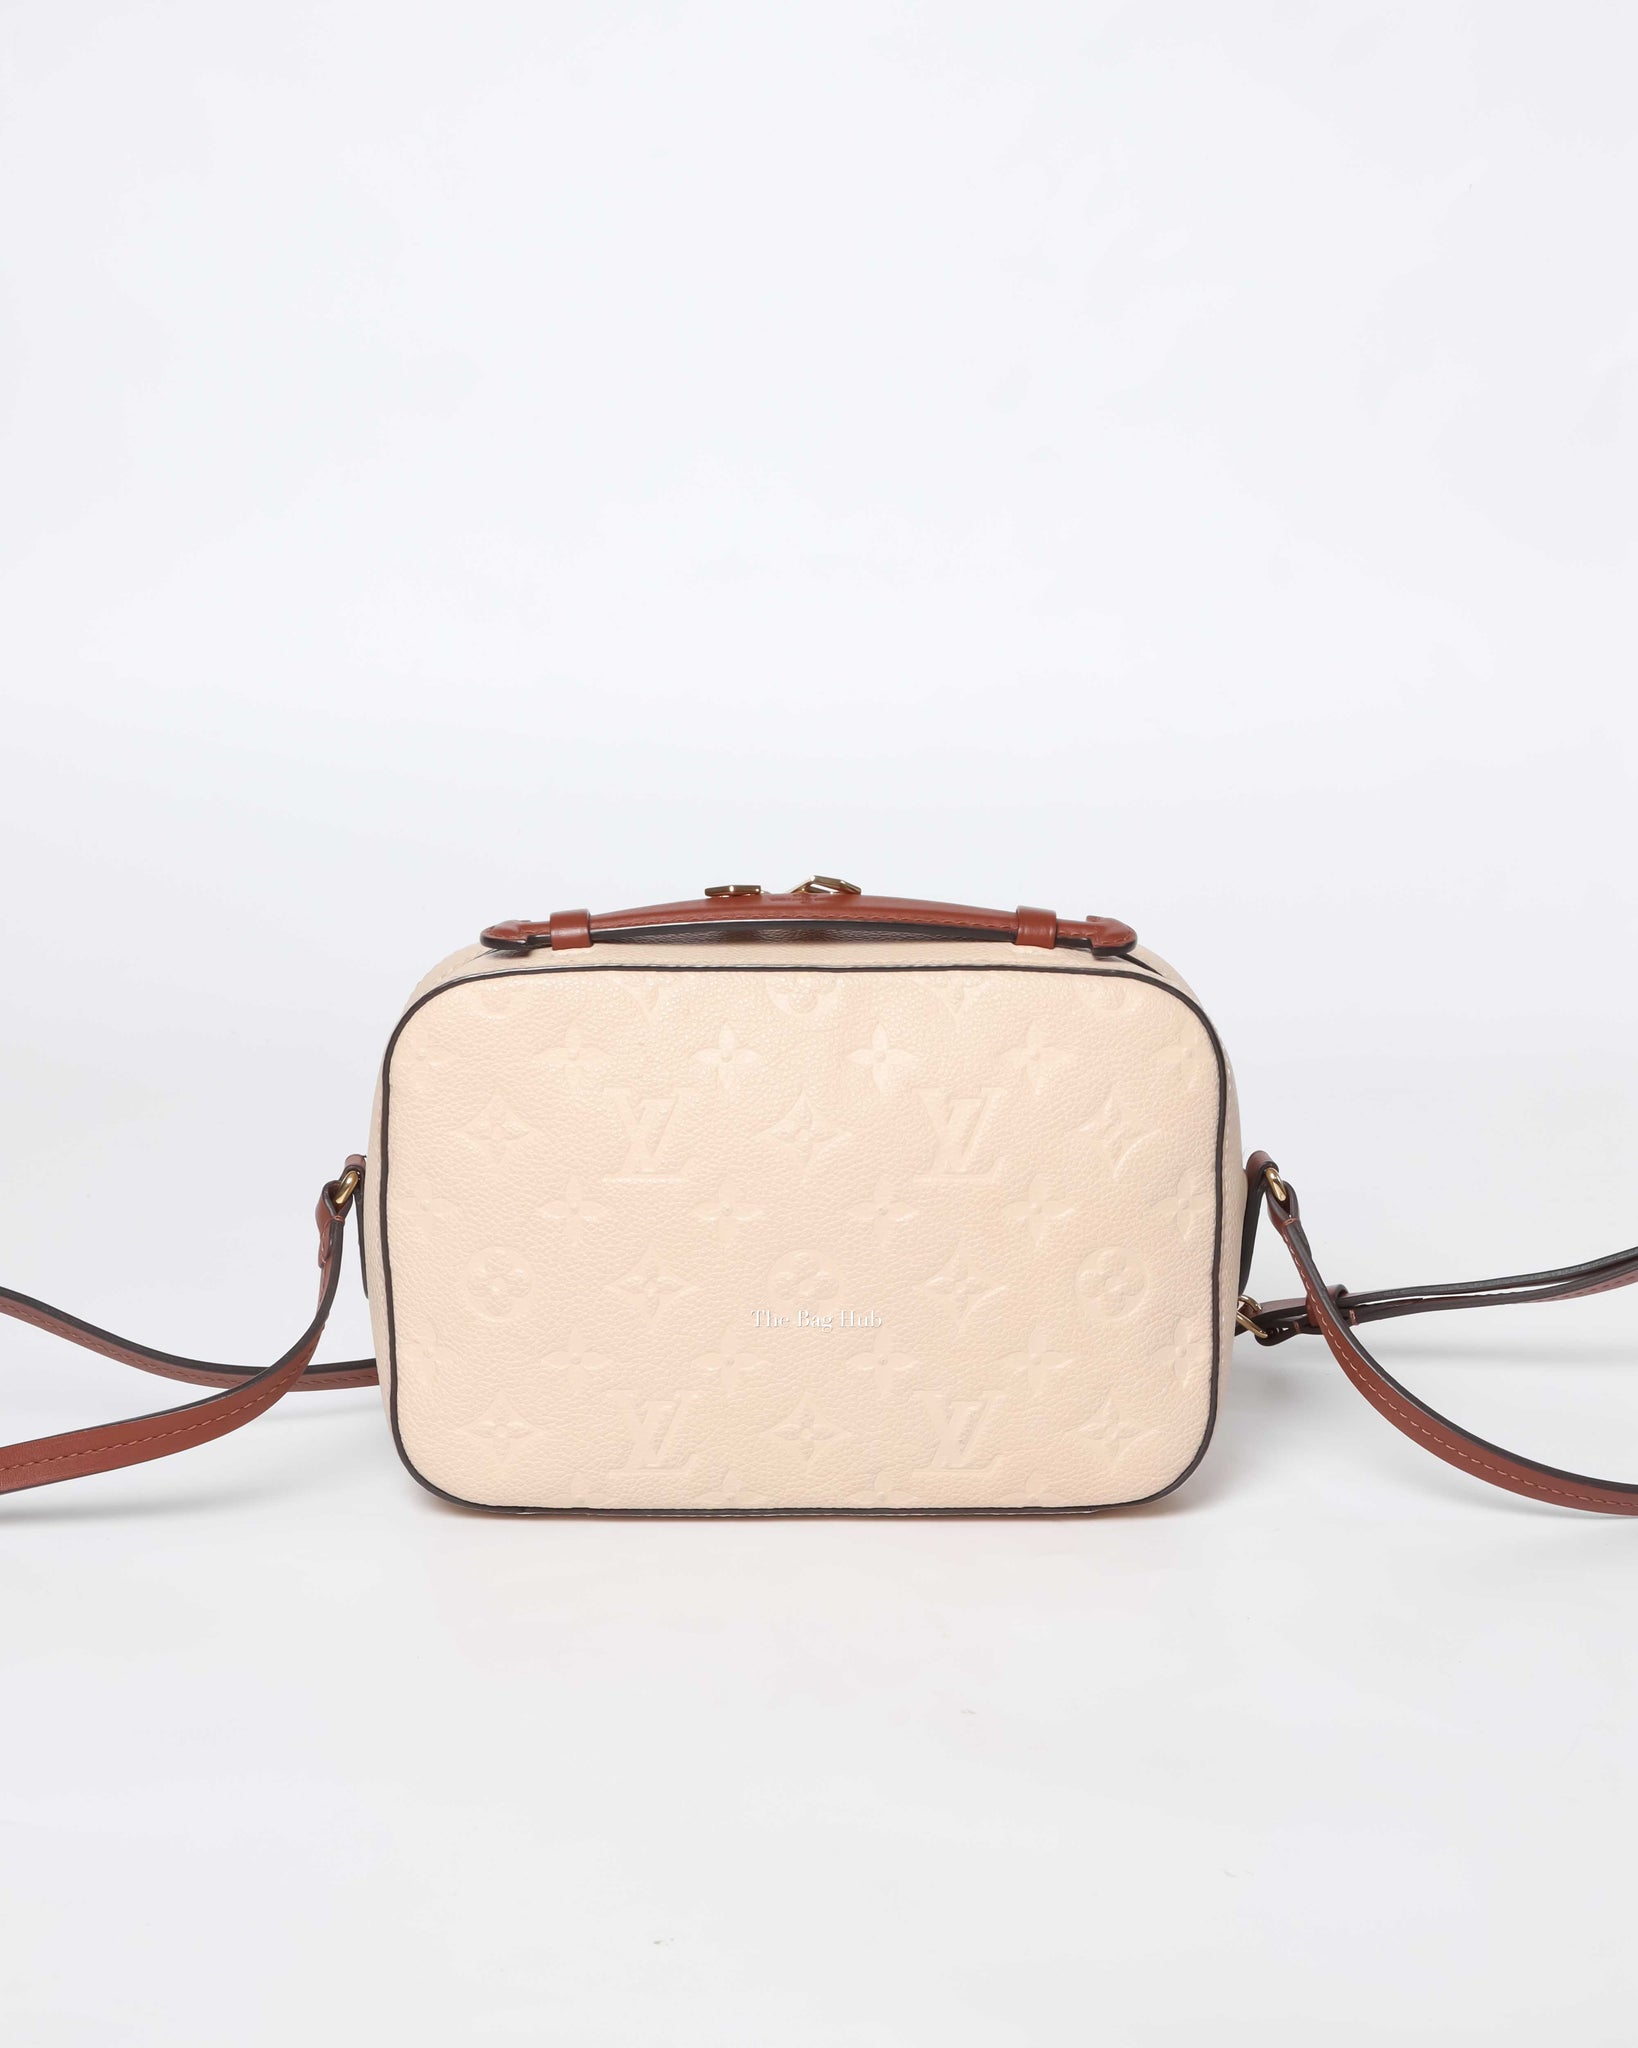 Louis Vuitton Cream Monogram Empreinte Saintonge Bag, Designer Brand, Authentic Louis Vuitton